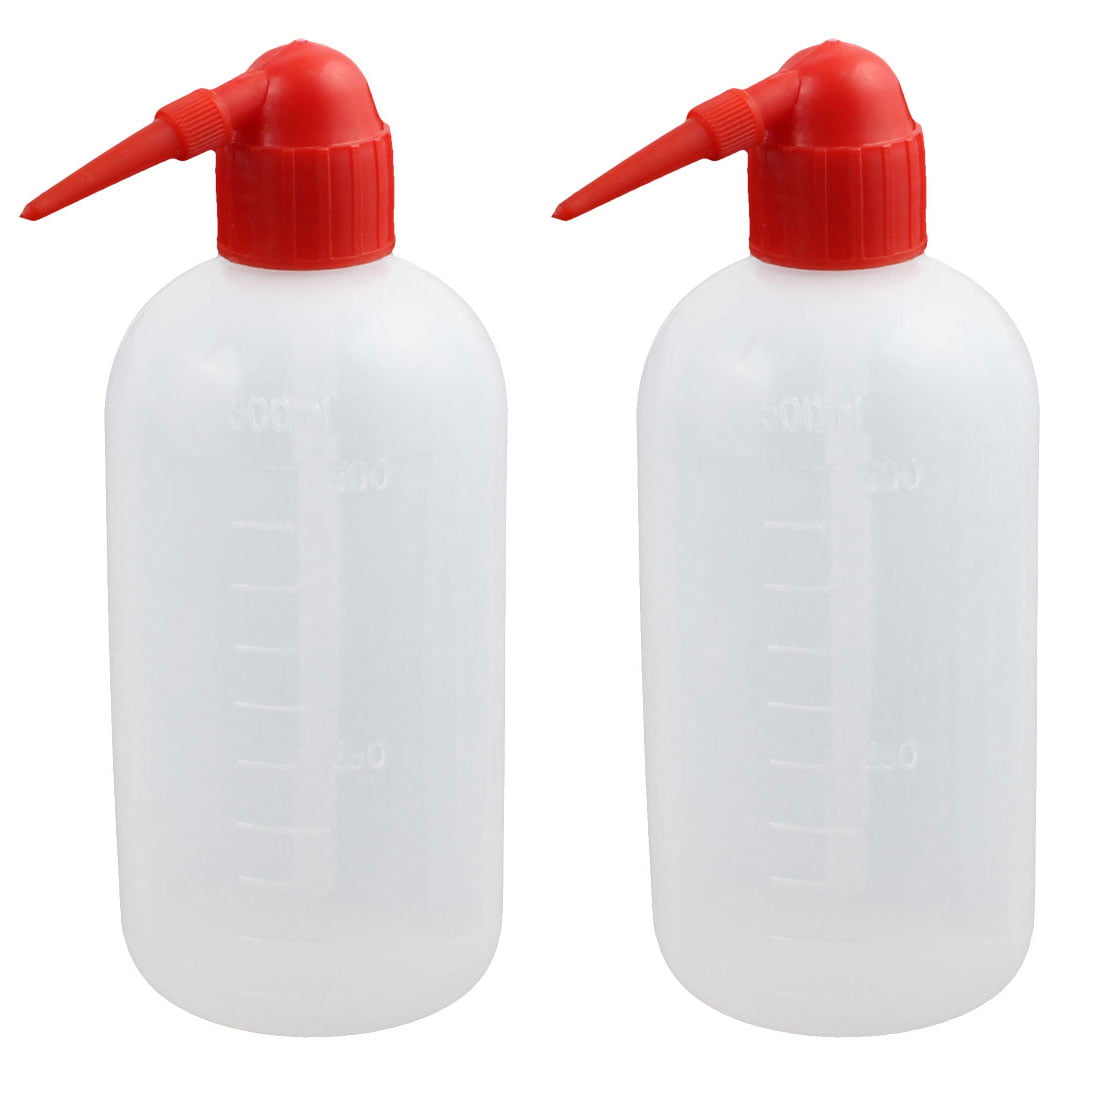 plastic squeeze bottles